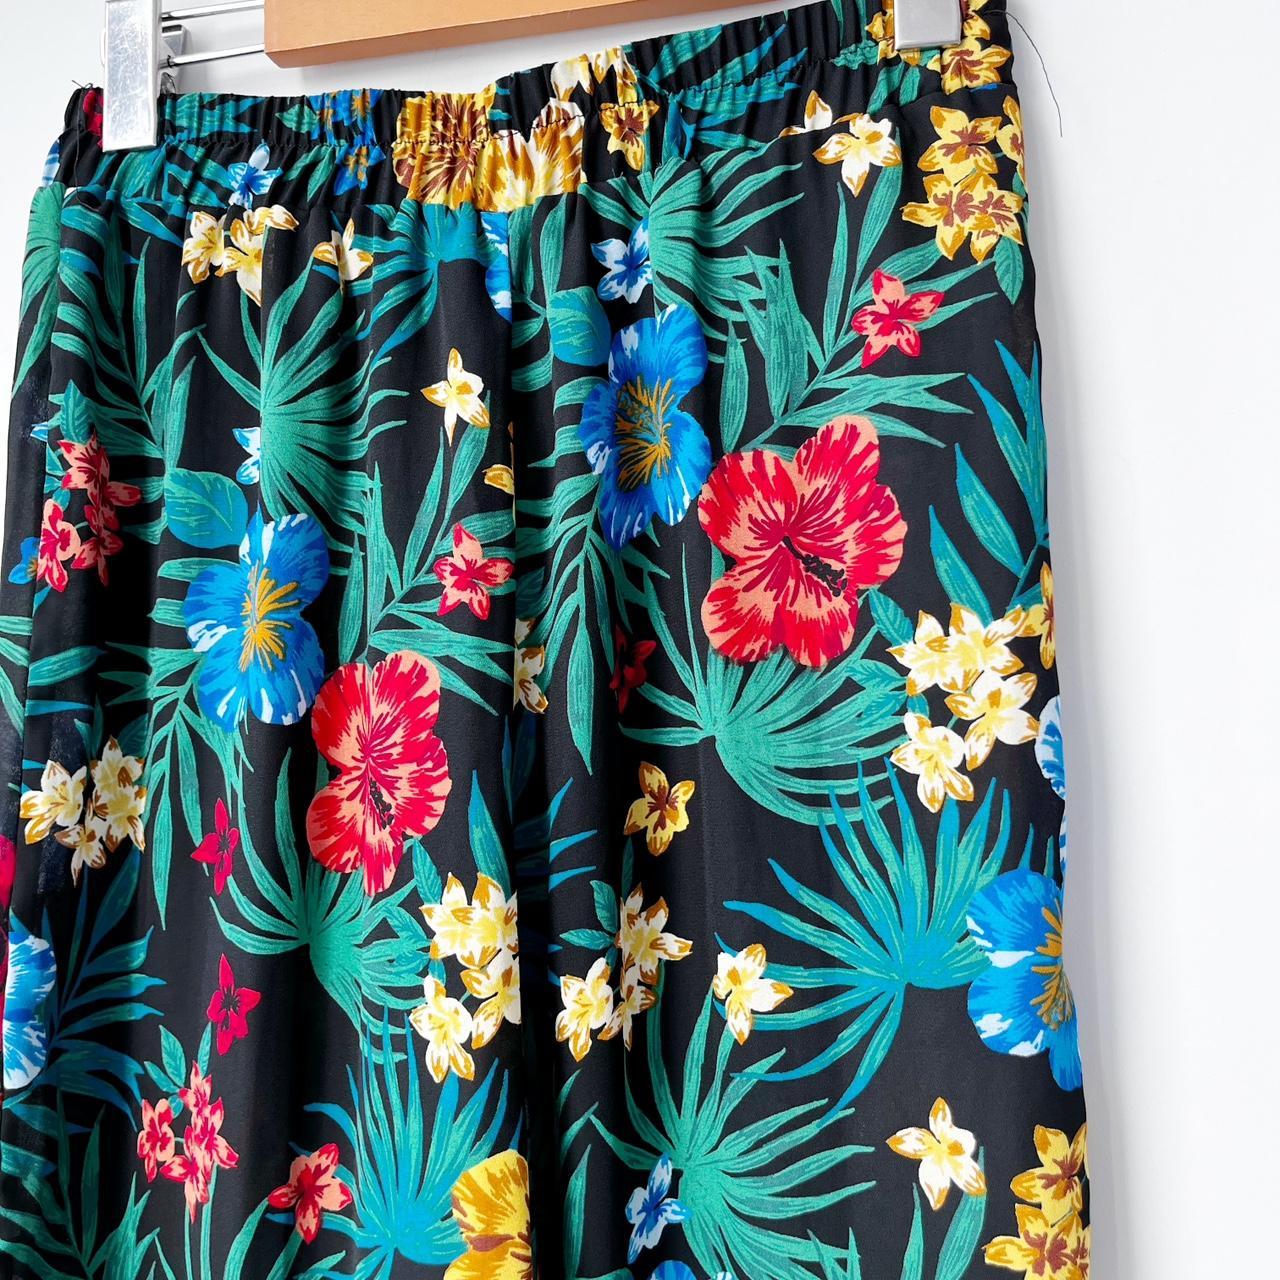 Favlux Tropical Floral Print Wide Leg Pants